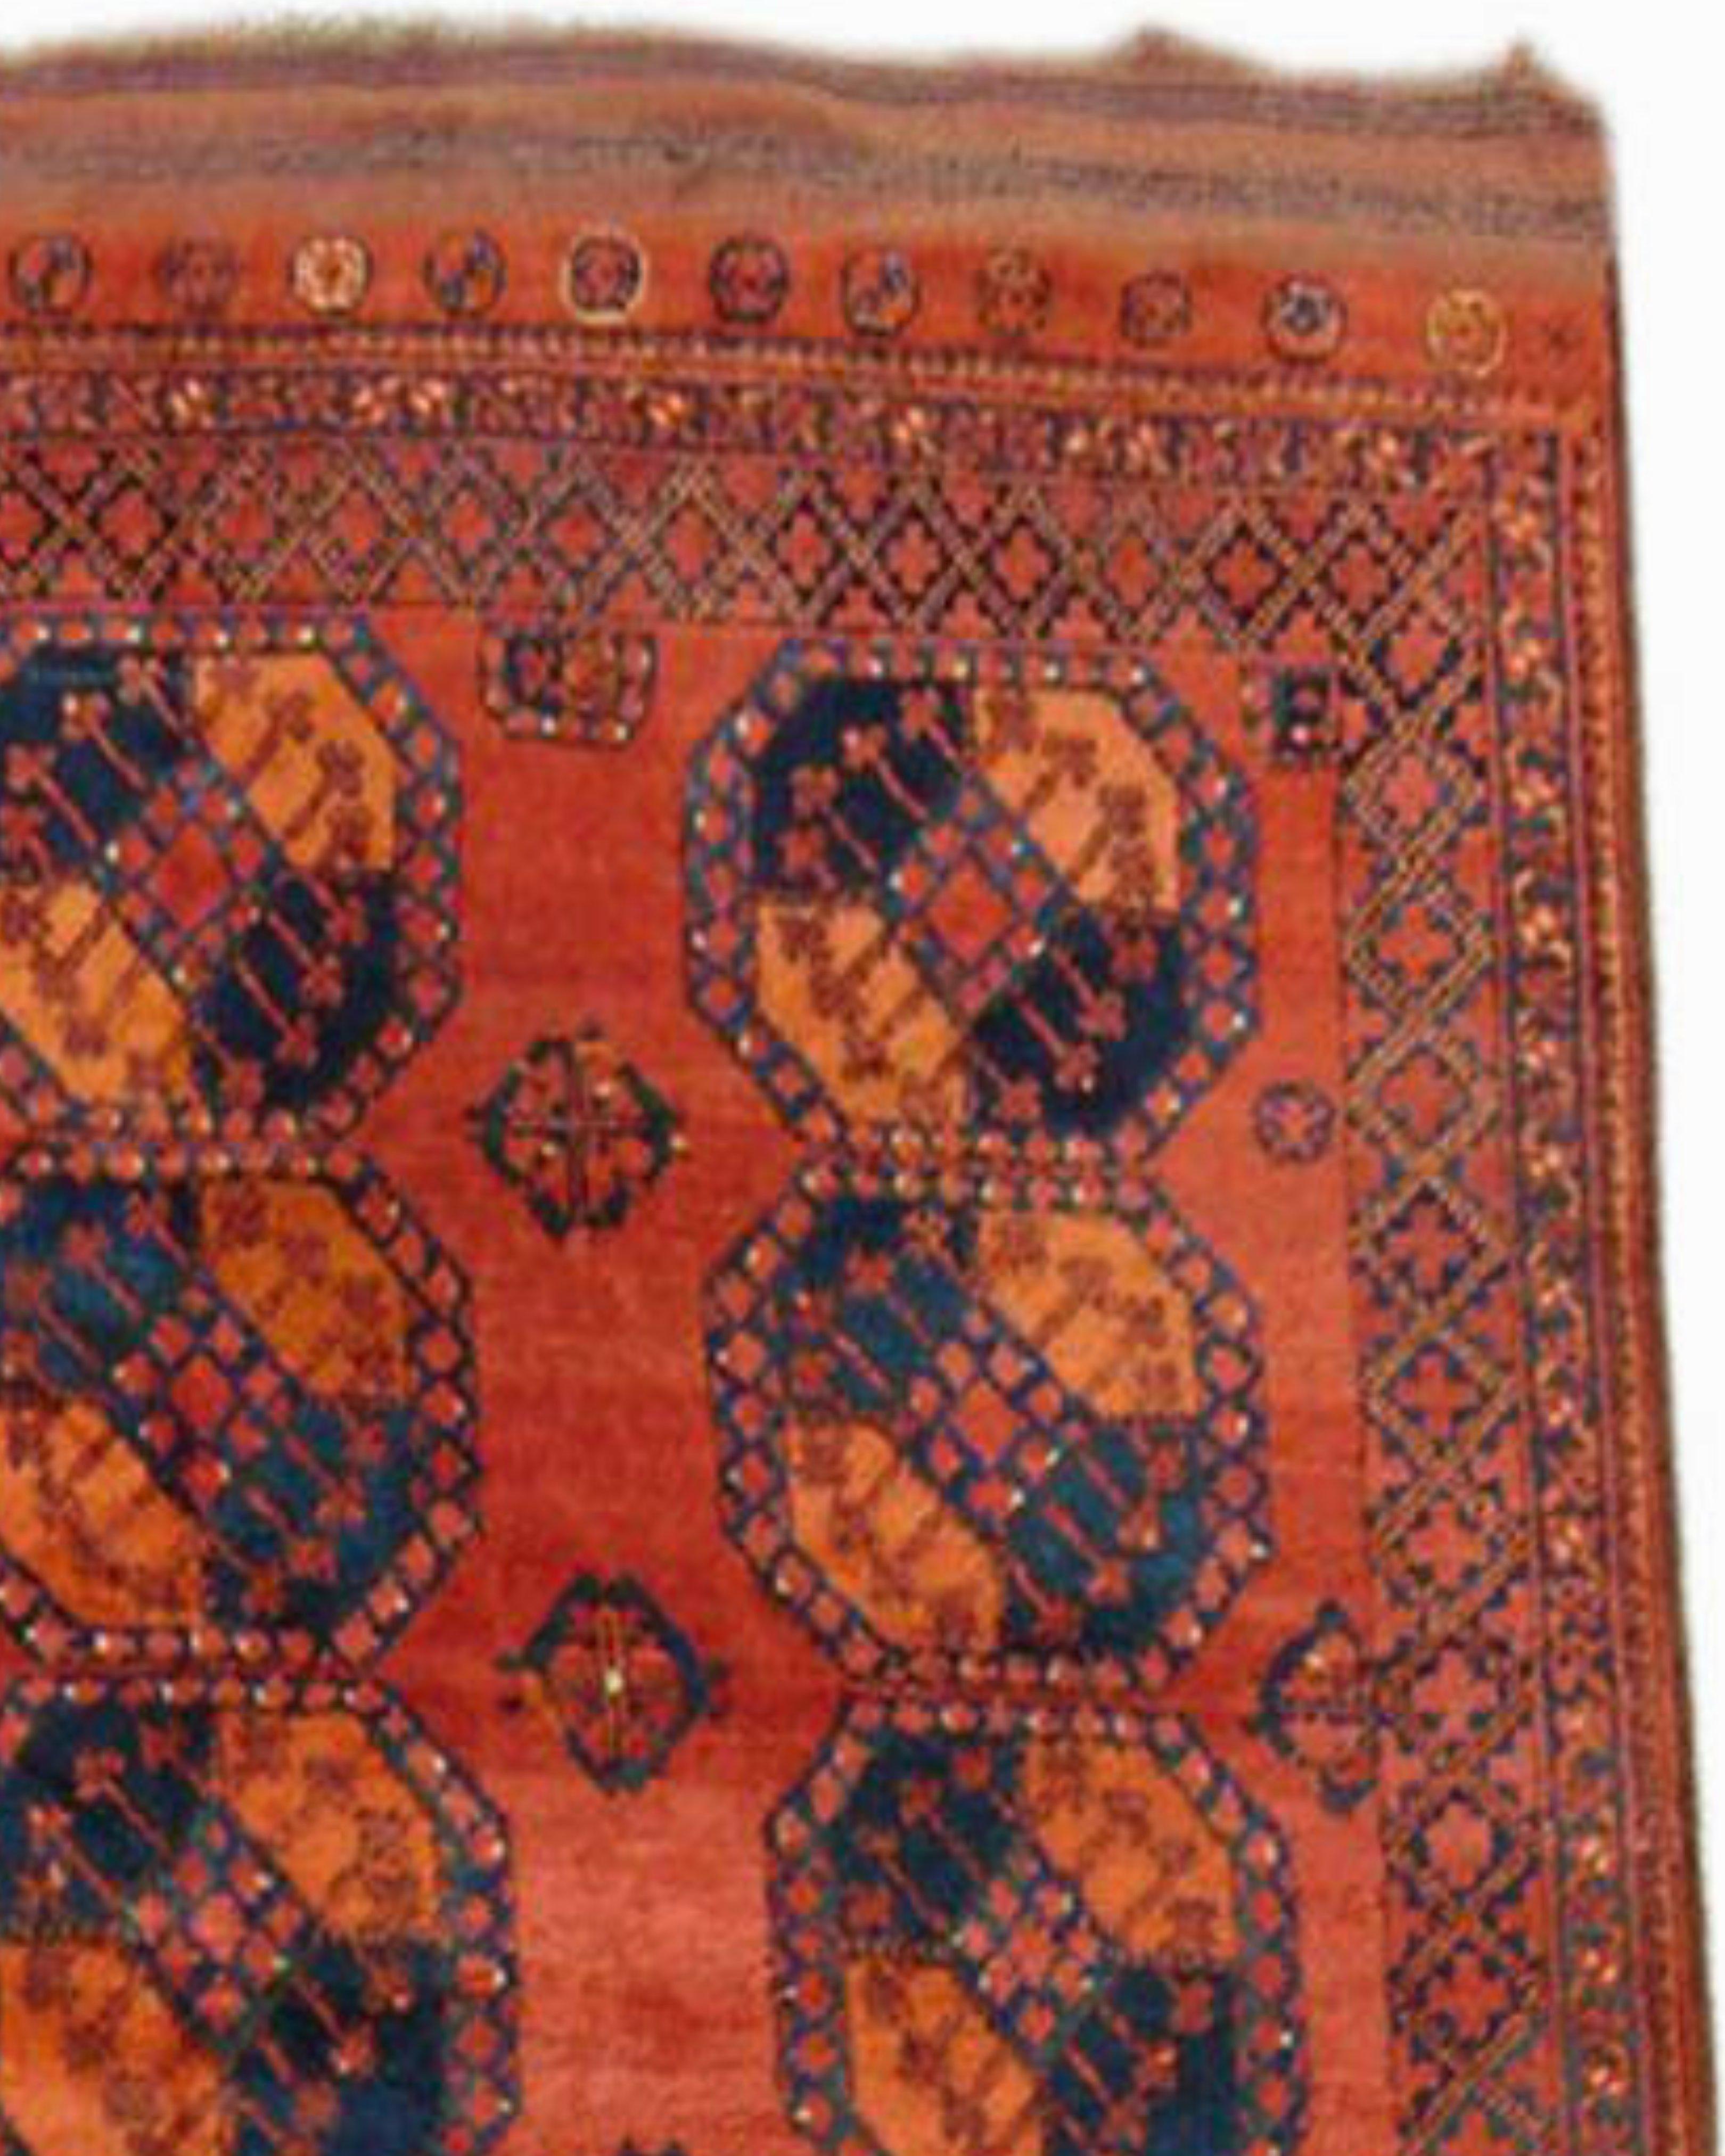 Antique Persian Ersari Main Carpet, 19th Century

Additional Information:
Dimensions: 8'9